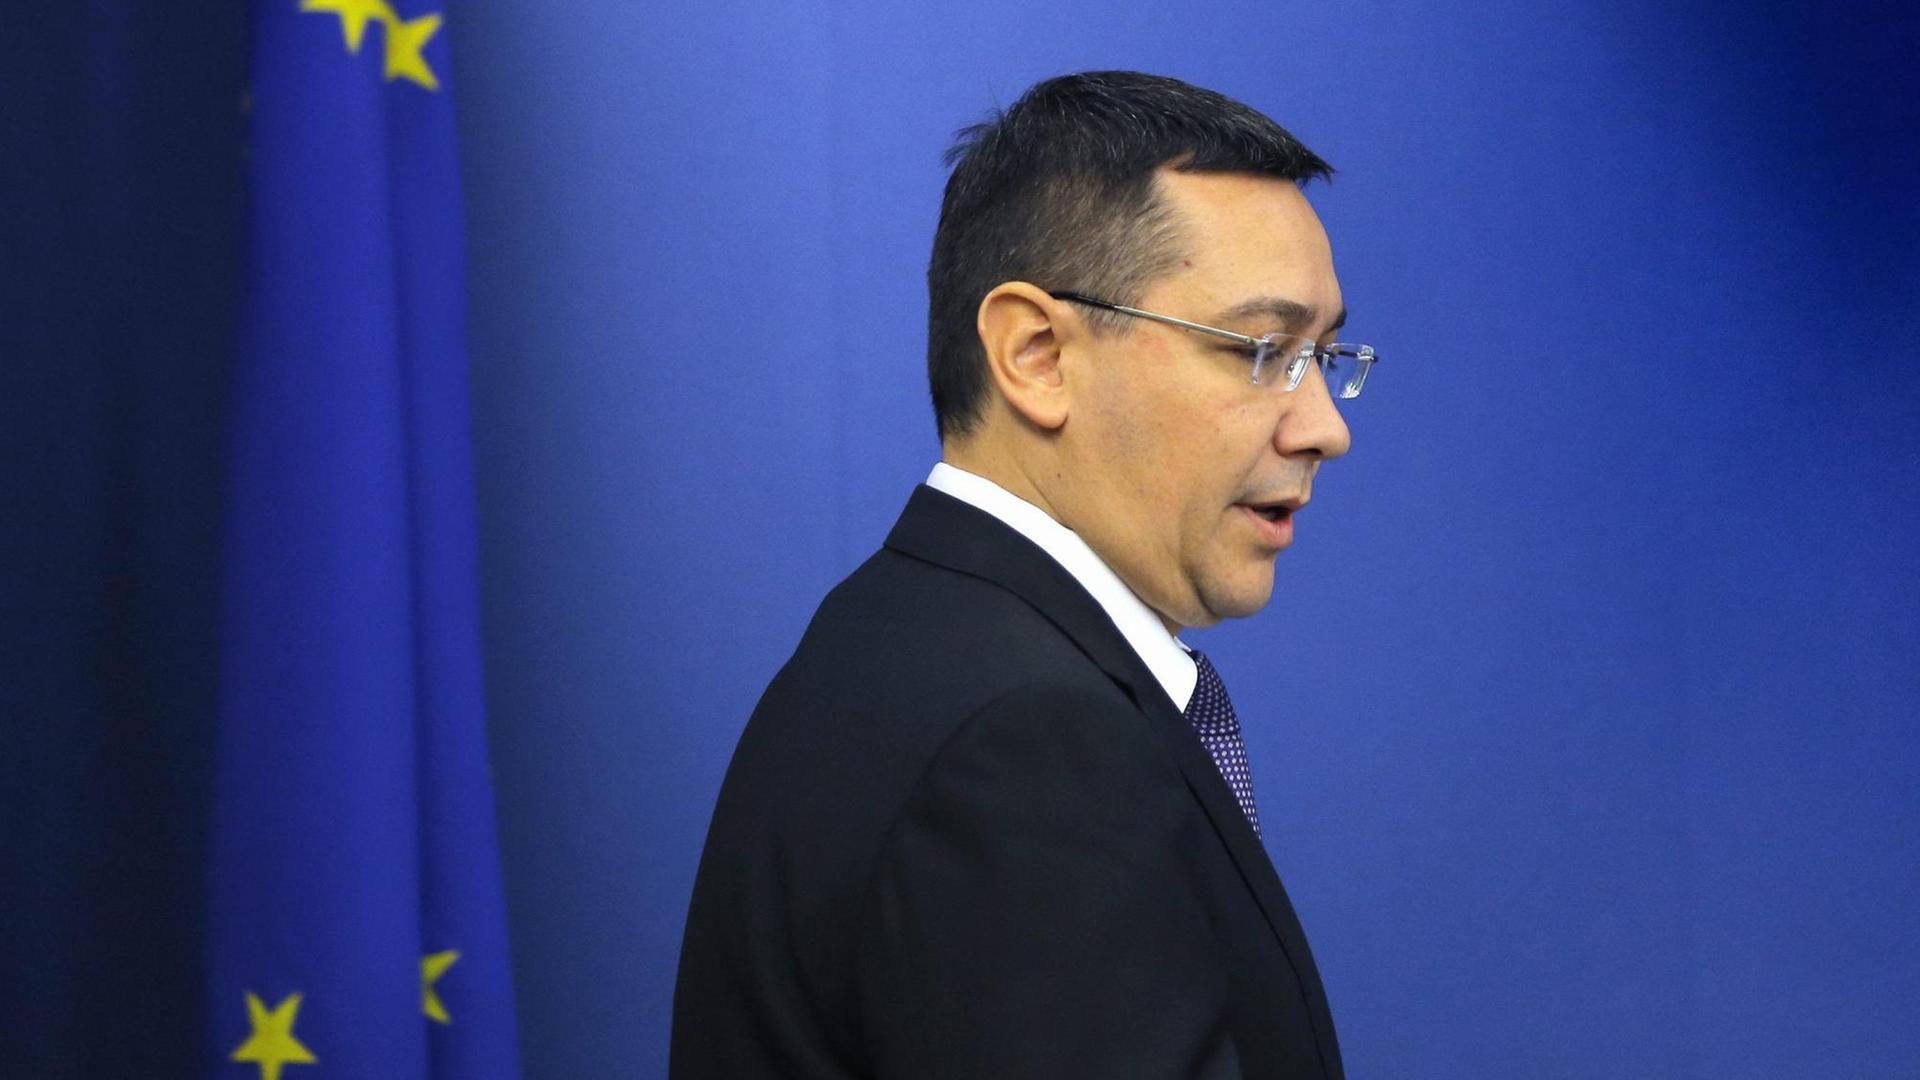 Victor Ponta geht an einer EU-Flagge vorbei.